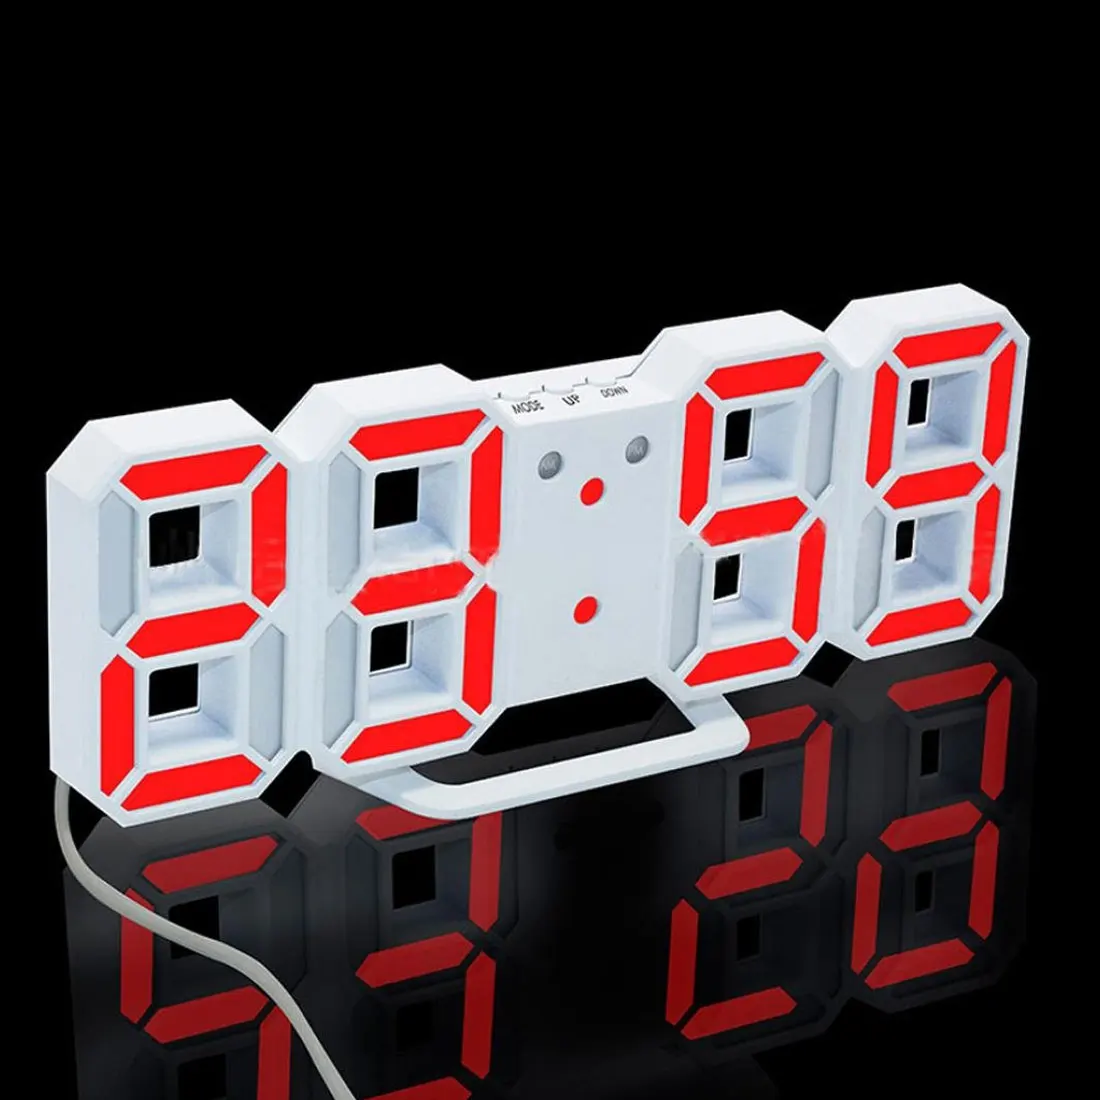 3D светодиодный настенные часы современный дизайн цифровые настольные часы будильник ночная часы для украшения дома гостиной - Цвет: White and Red